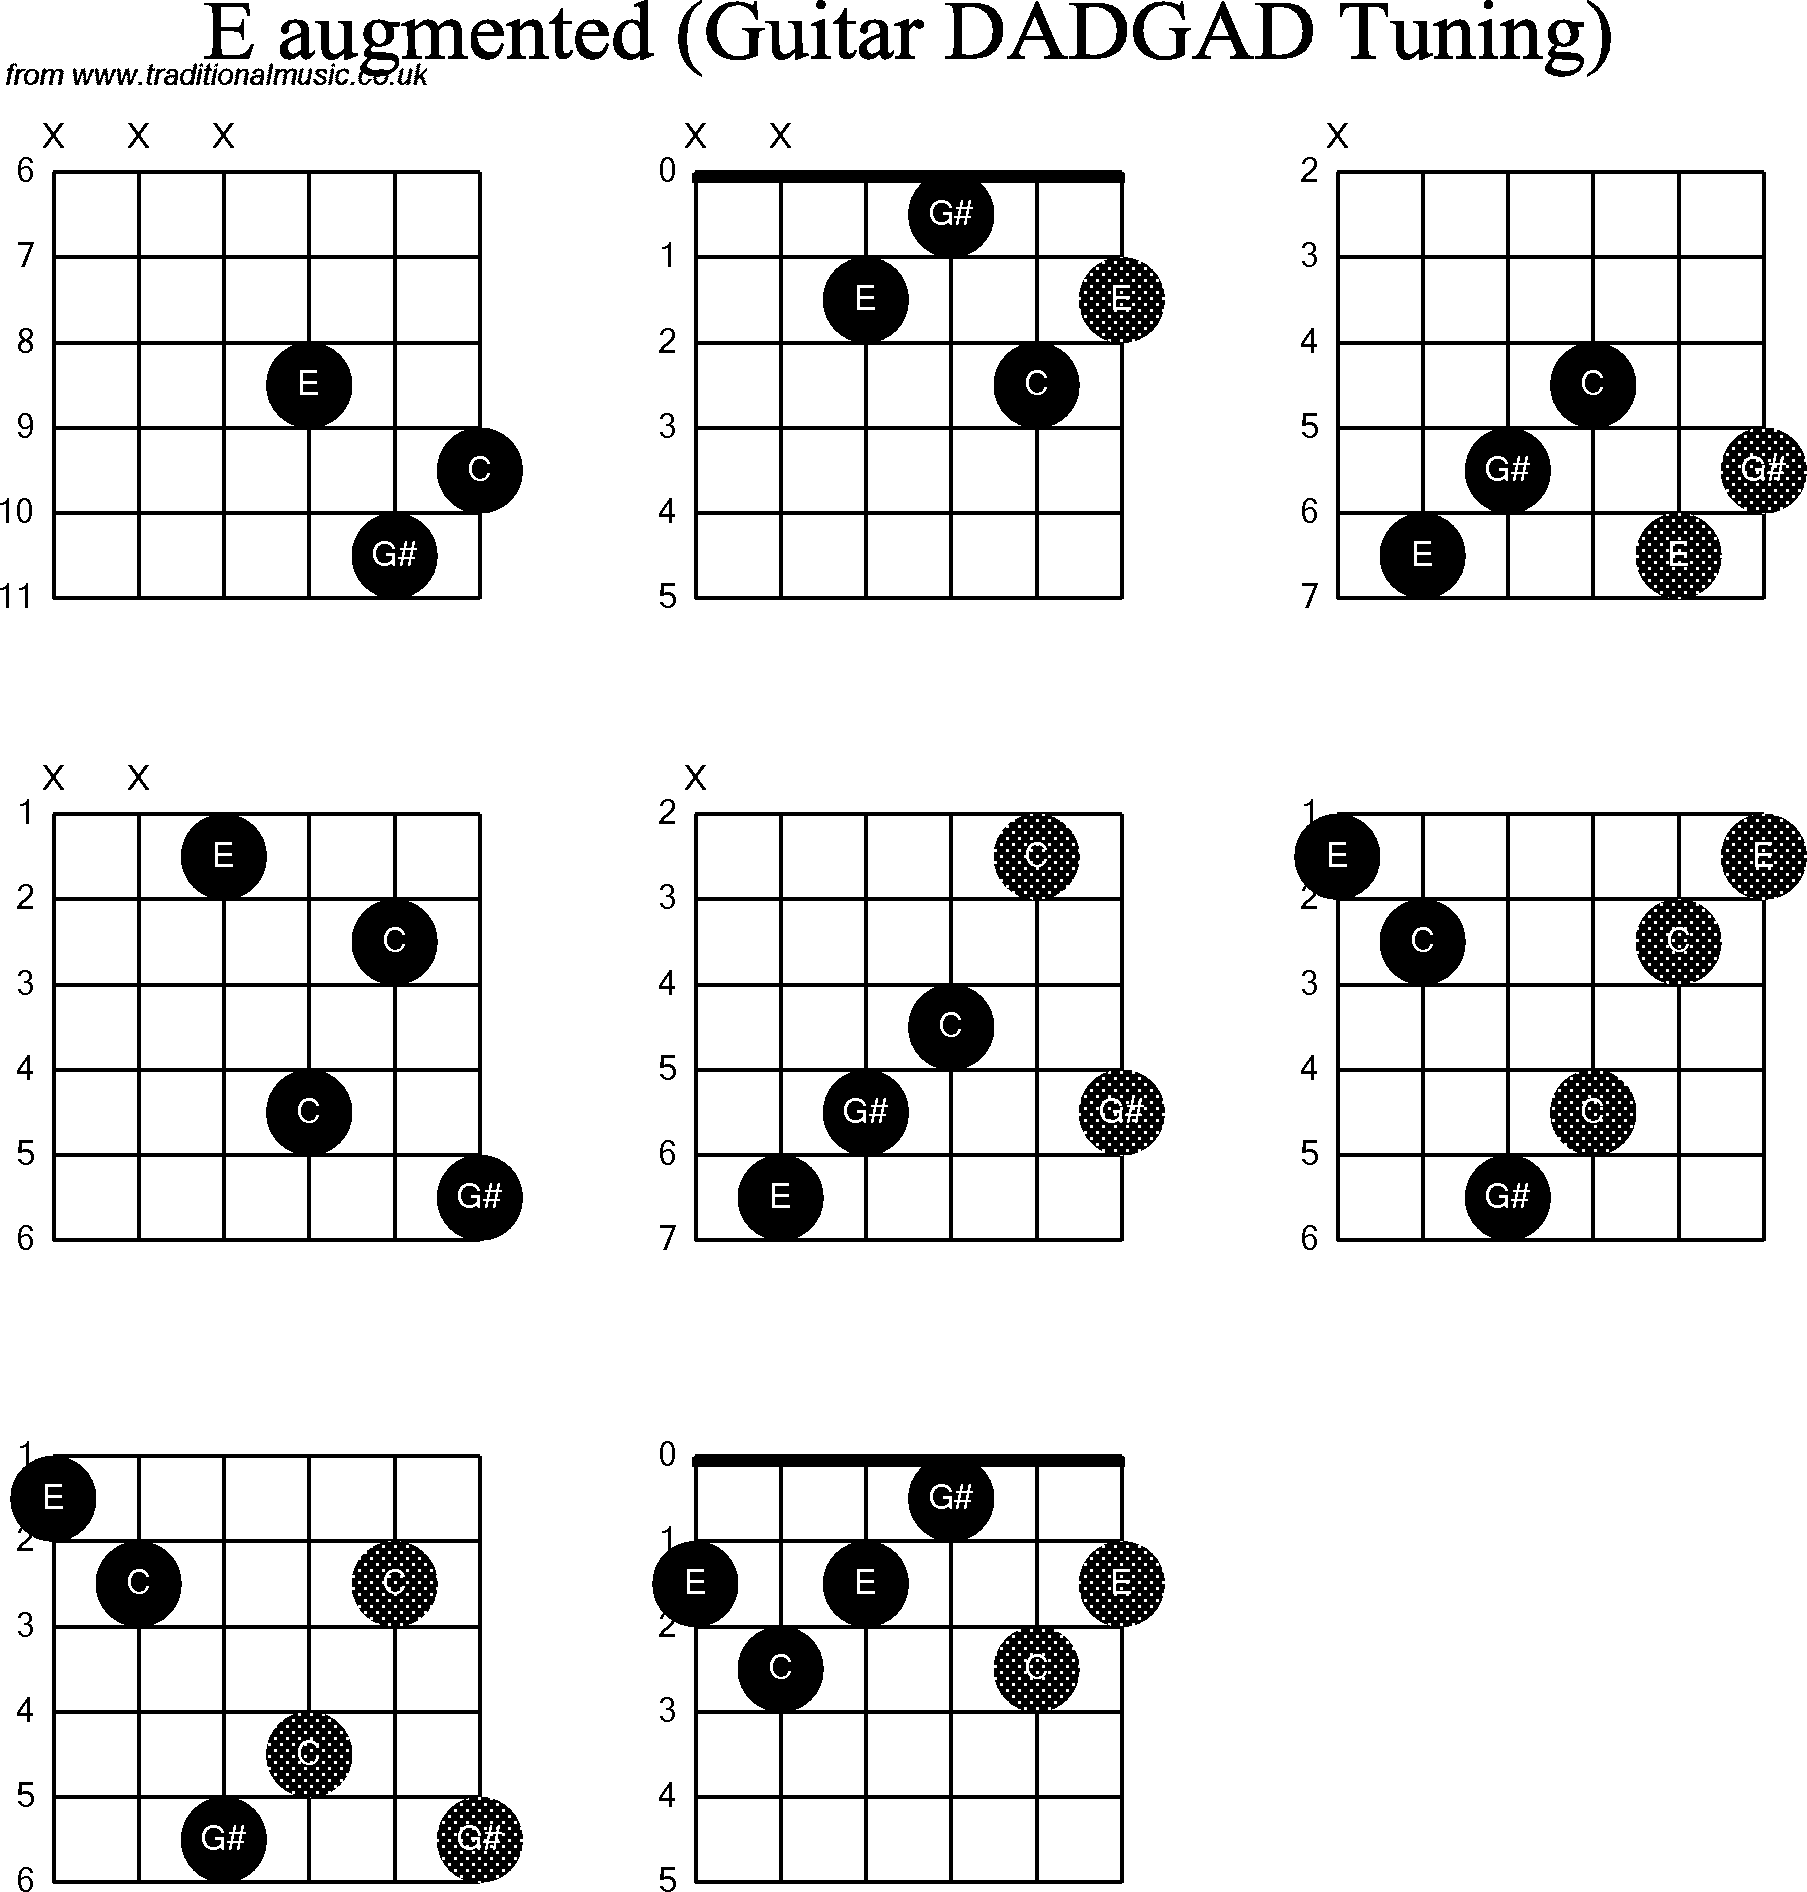 Chord Diagrams for D Modal Guitar(DADGAD), E Augmented